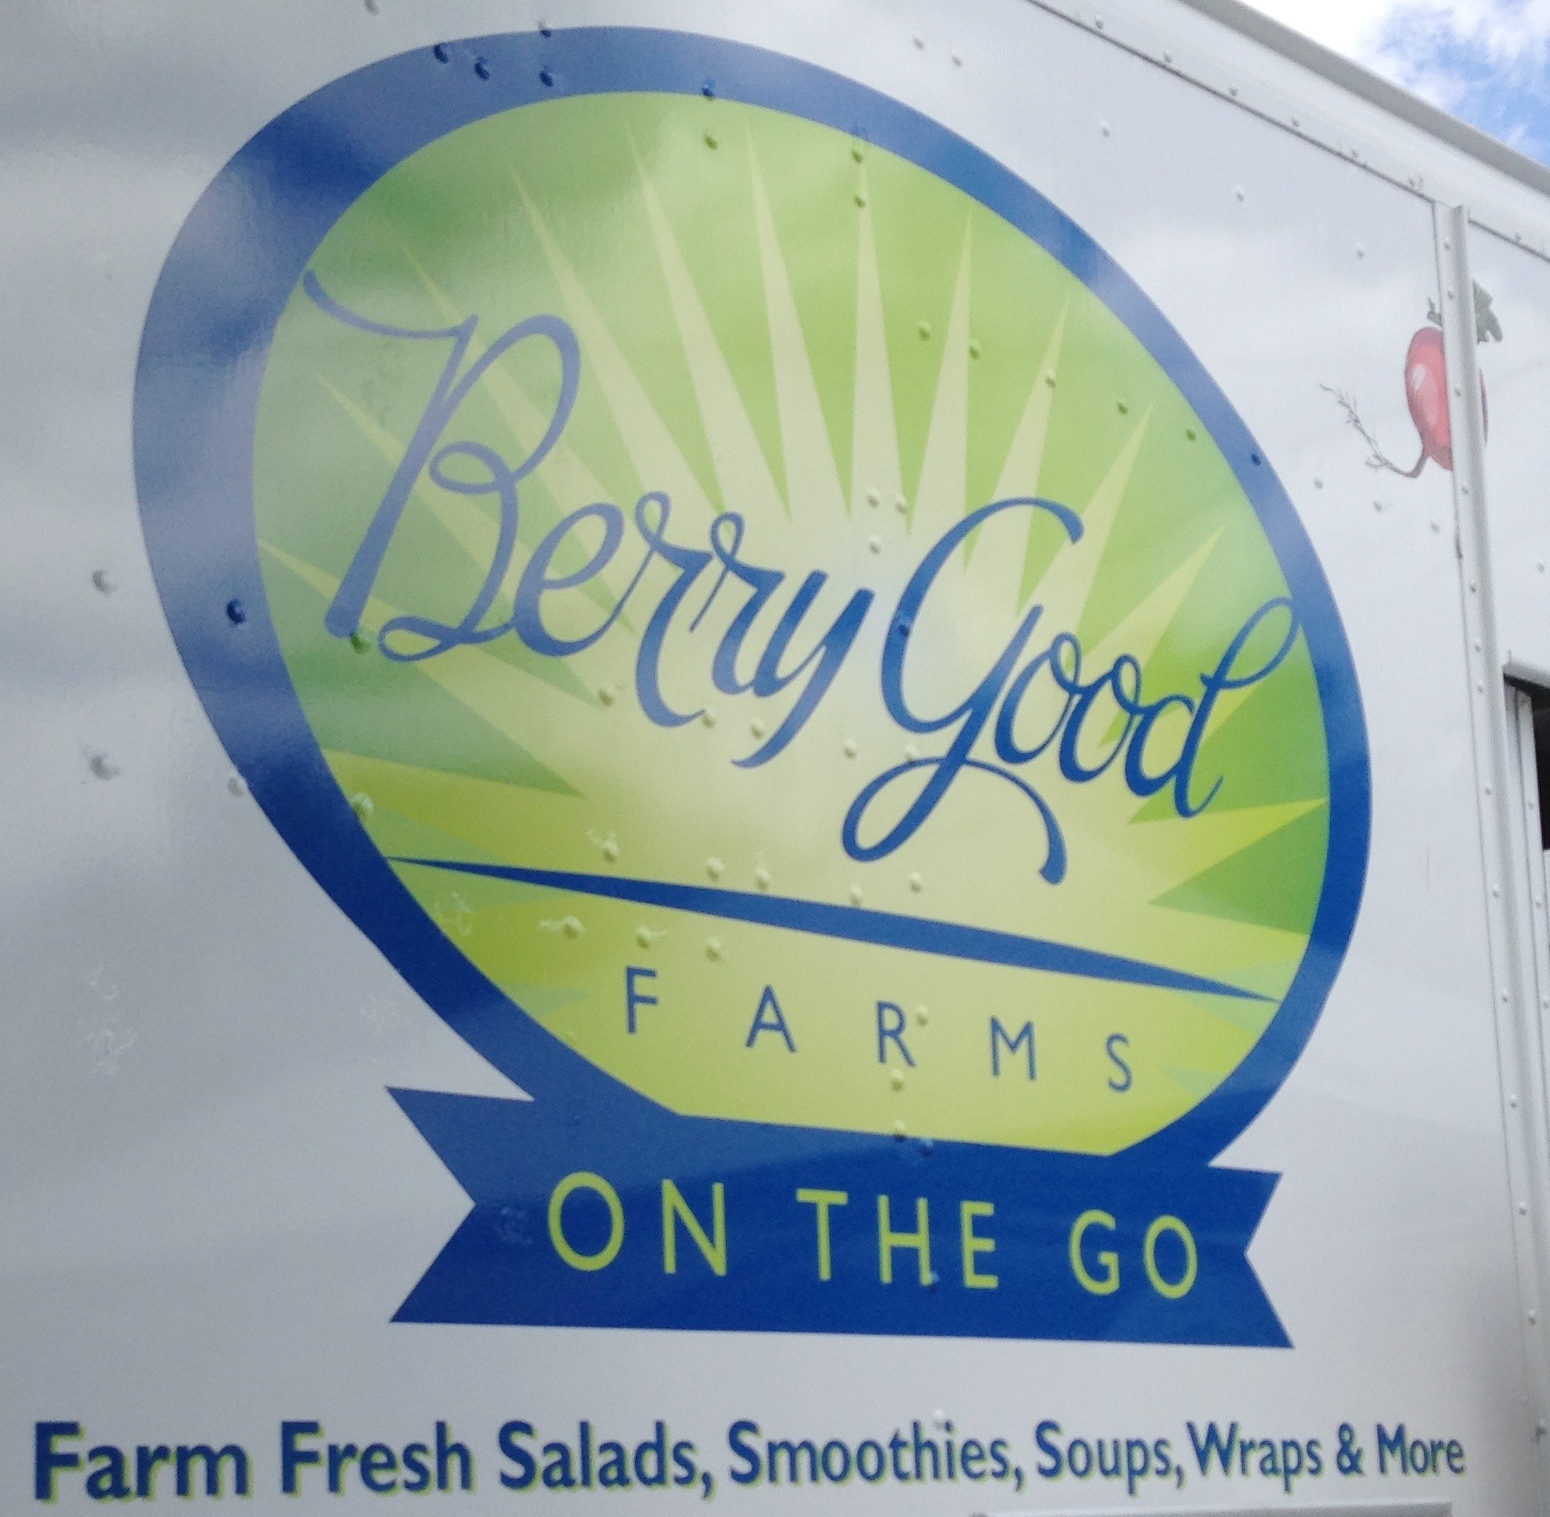 Berry Good Farms On The Go